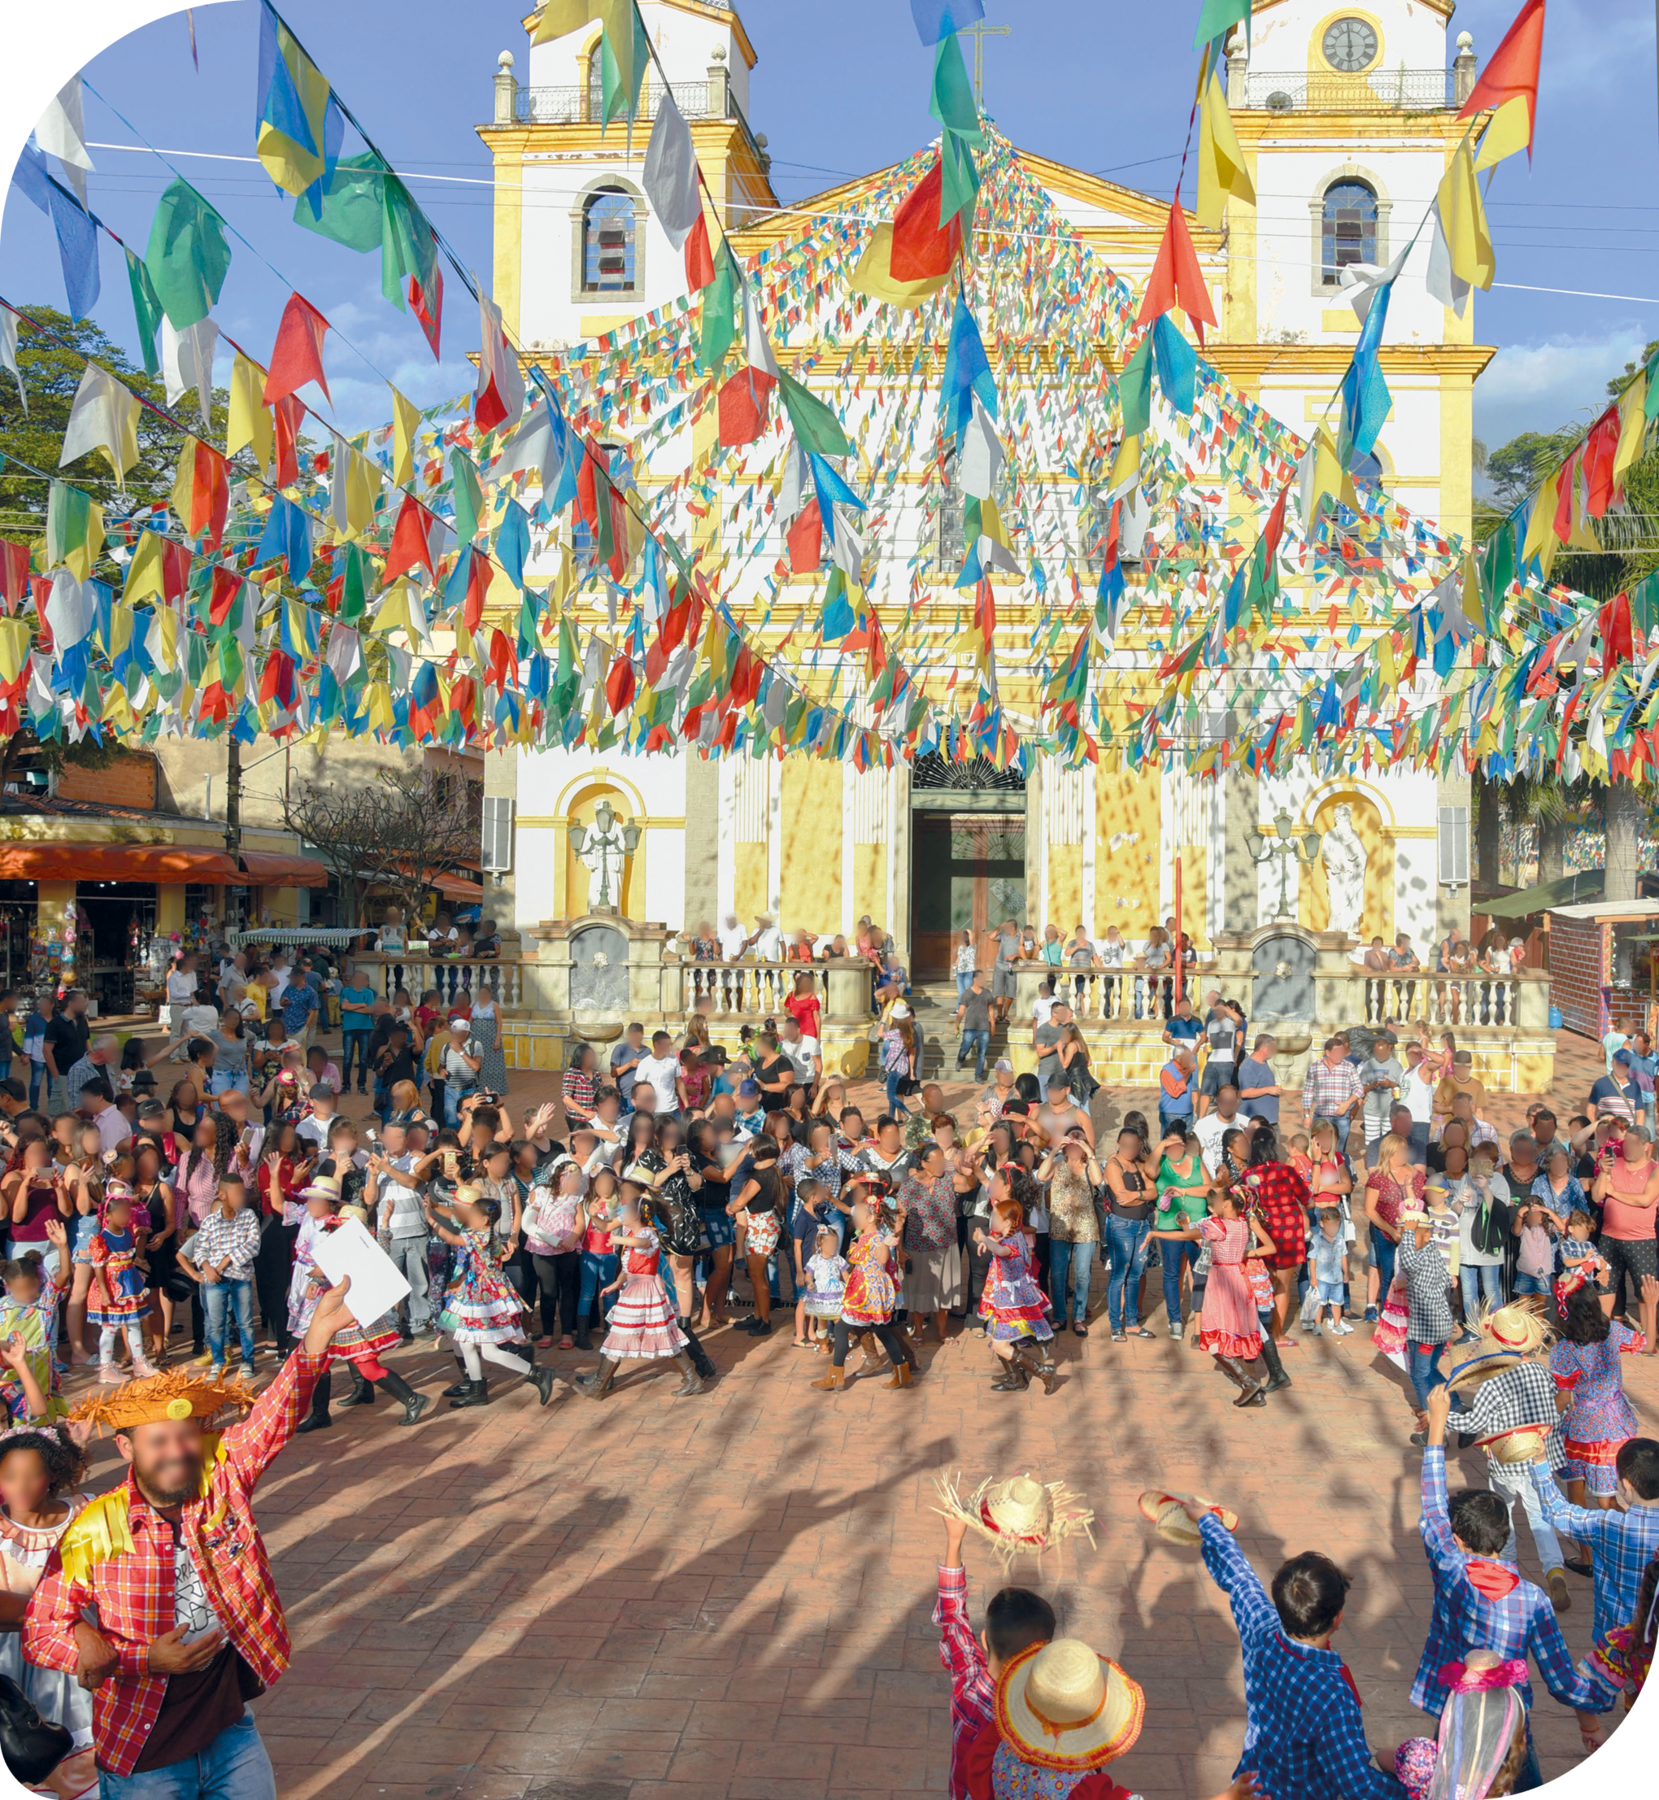 Fotografia. Muitas pessoas reunidas em círculo em frente a uma igreja. Há pessoas dançando quadrilha e outras que assistem. Na parte superior, bandeirinha coloridas penduradas. A igreja ao fundo é branca com detalhes amarelos.